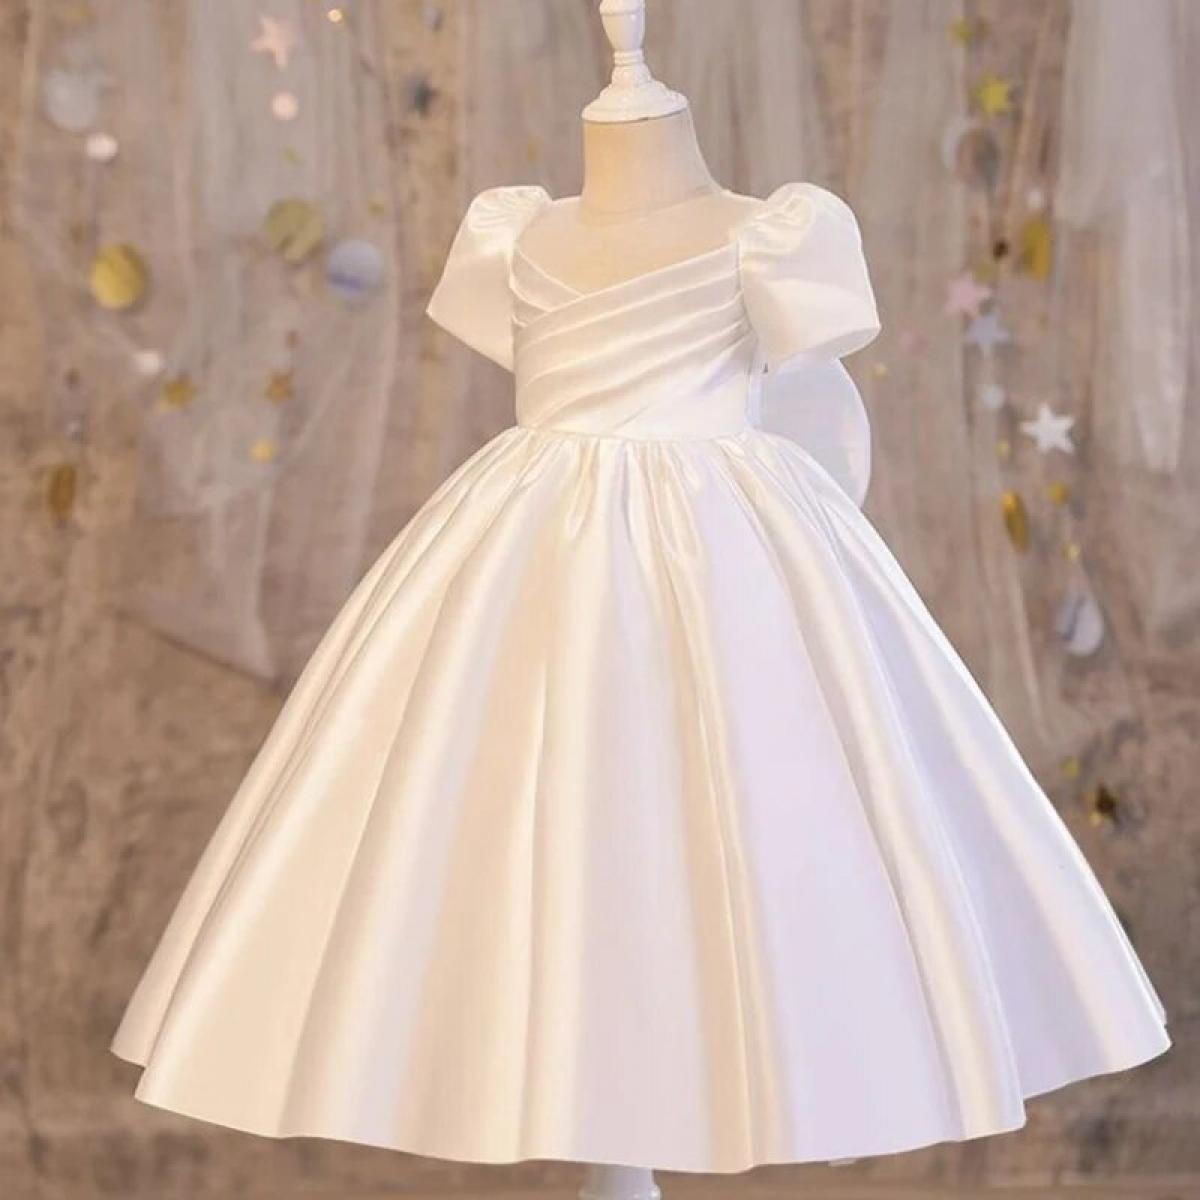 Elegante menina pequena dama de honra roupas vestidos de noite crianças traje princesa vestido flor roupas branco pino